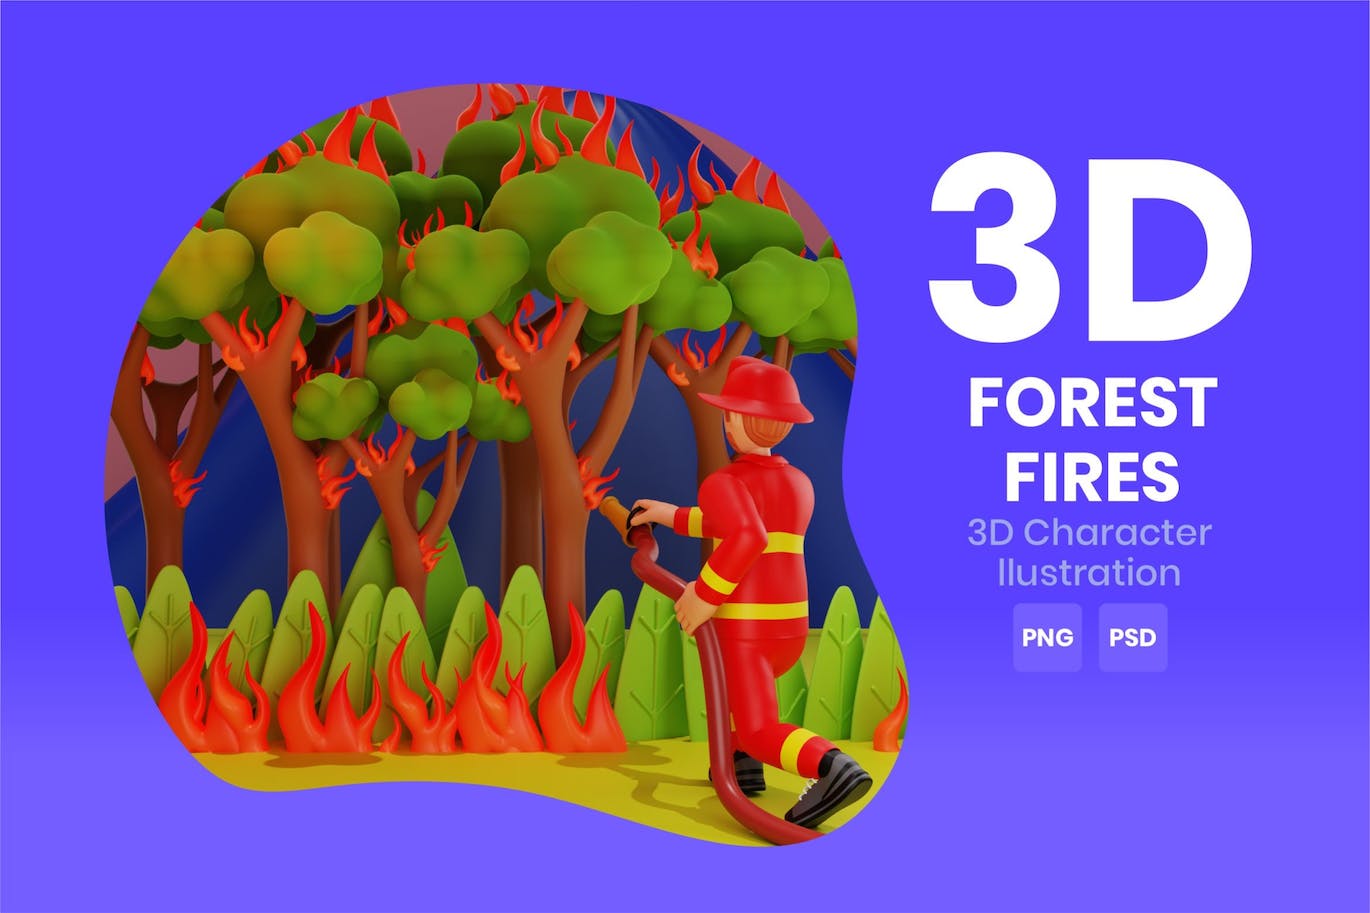 森林火灾3D角色插画素材 Forest Fires 3D Character Illustration 图片素材 第1张